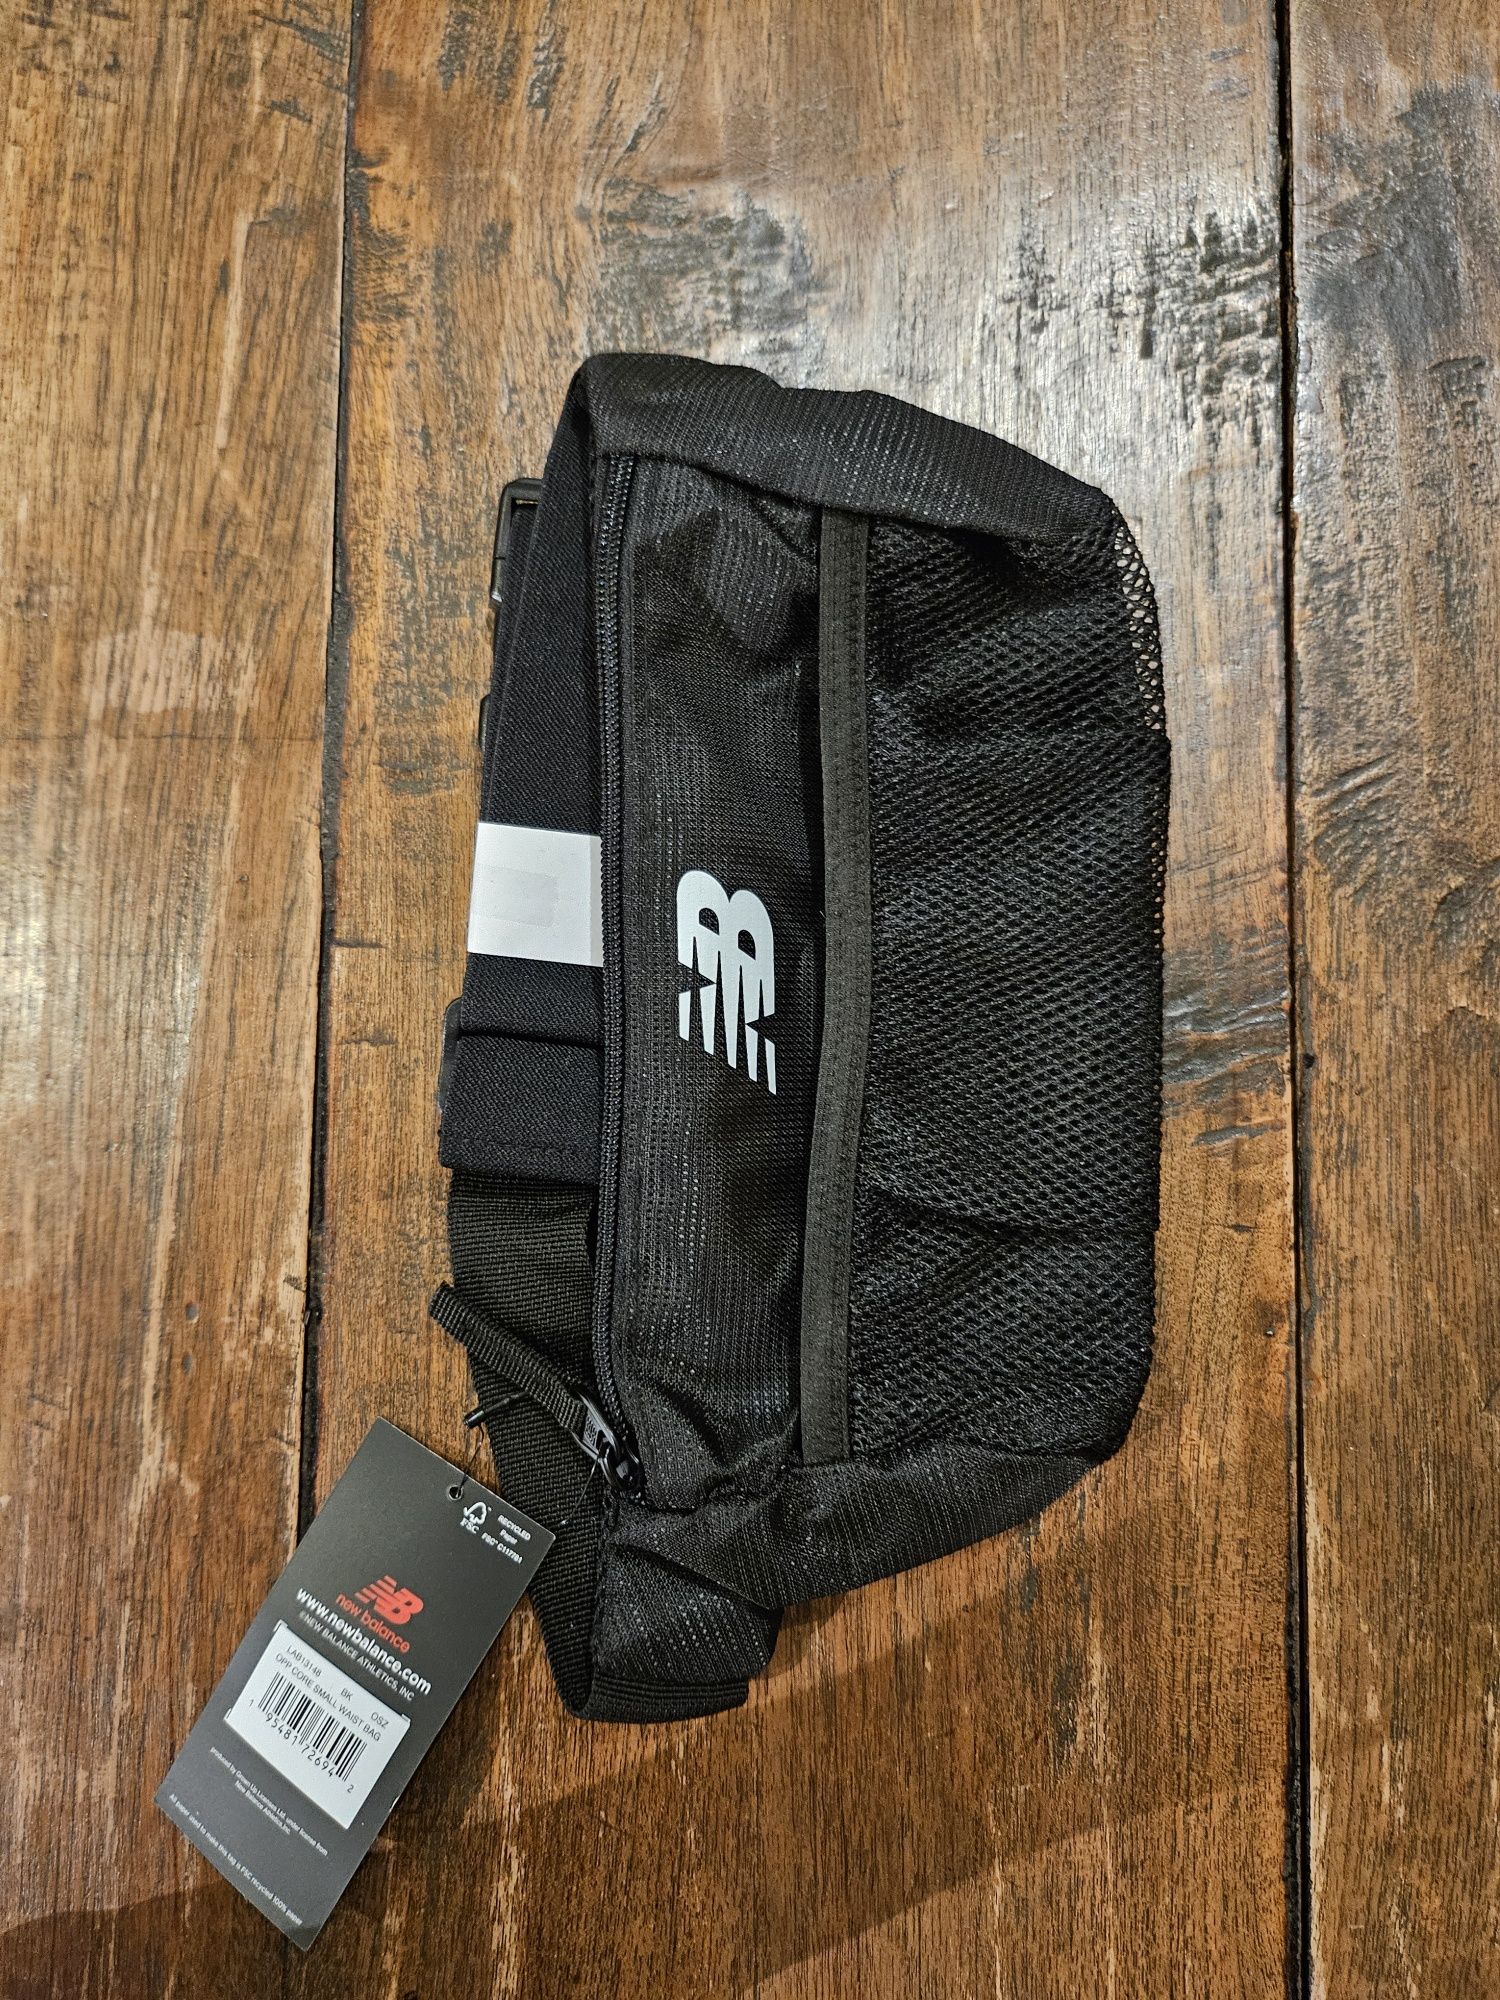 Saszetka torba typu nerka firmy New Balance dla biegacza